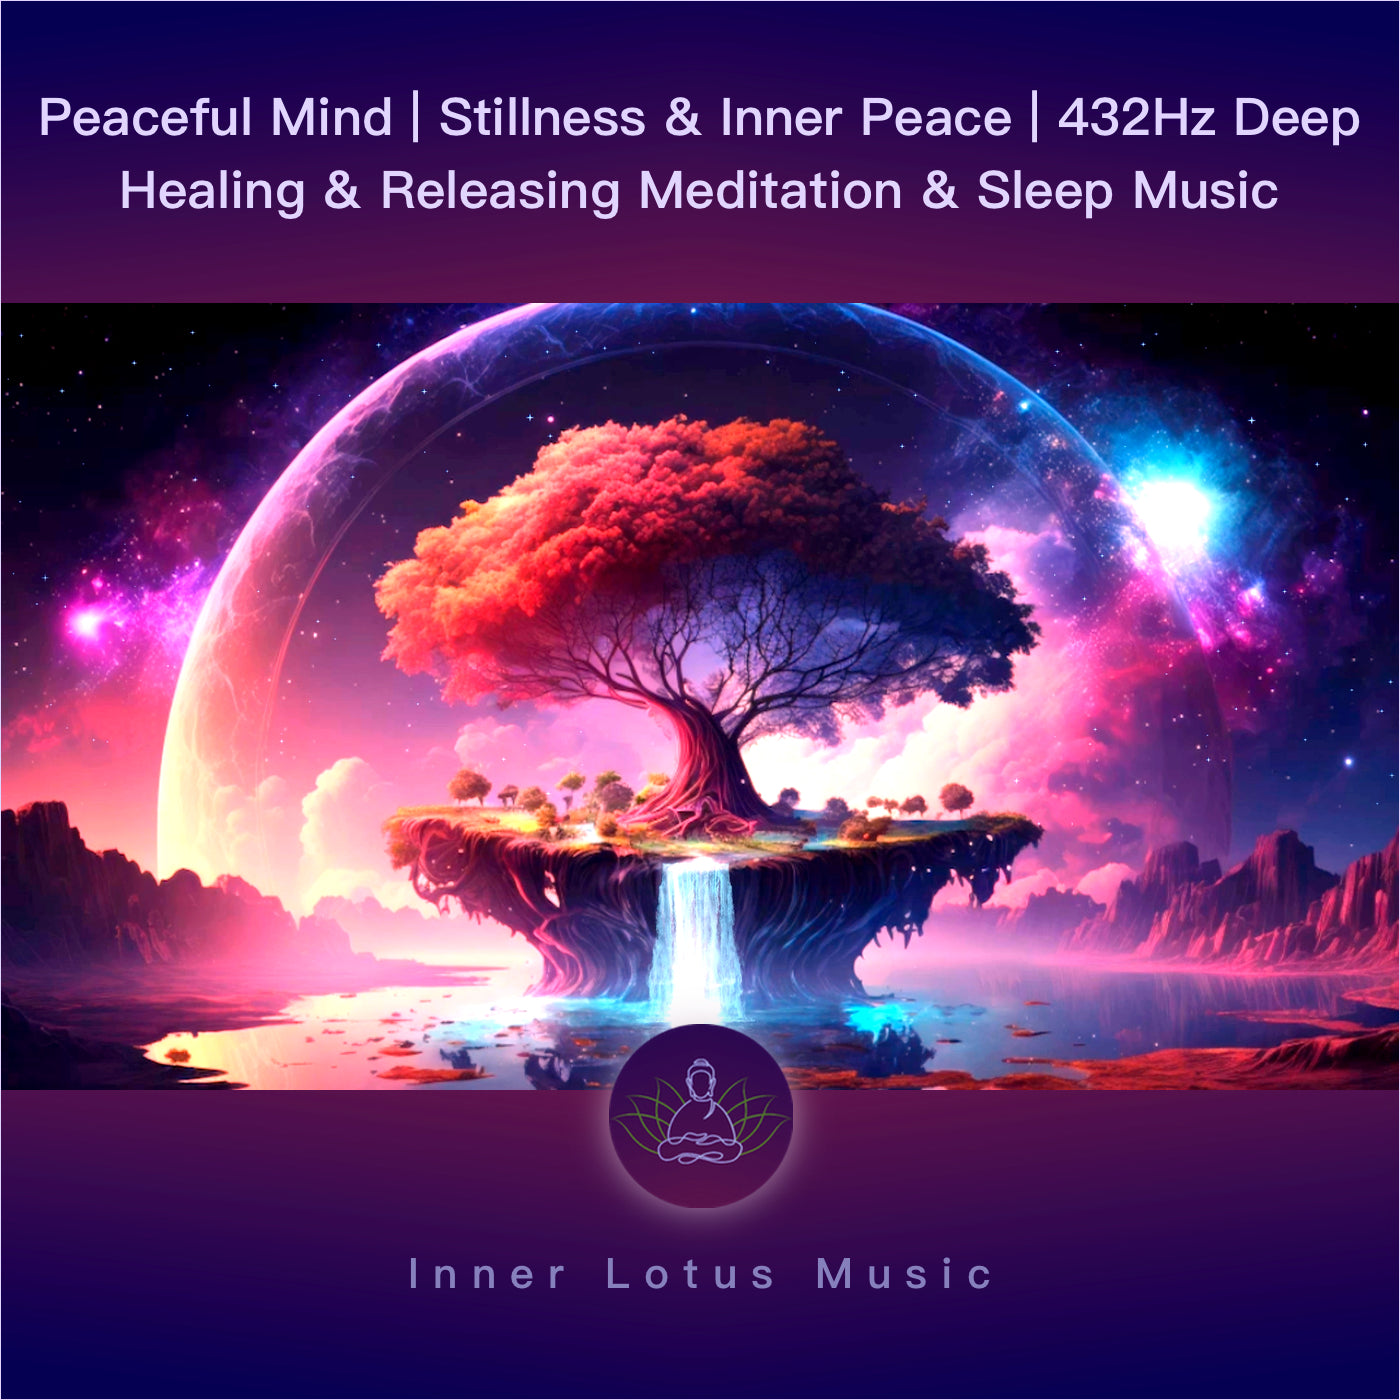 Seelenfrieden | Innere Ruhe und Stille | Heilende 432Hz Musik für Entspannung, Meditation & Schlaf